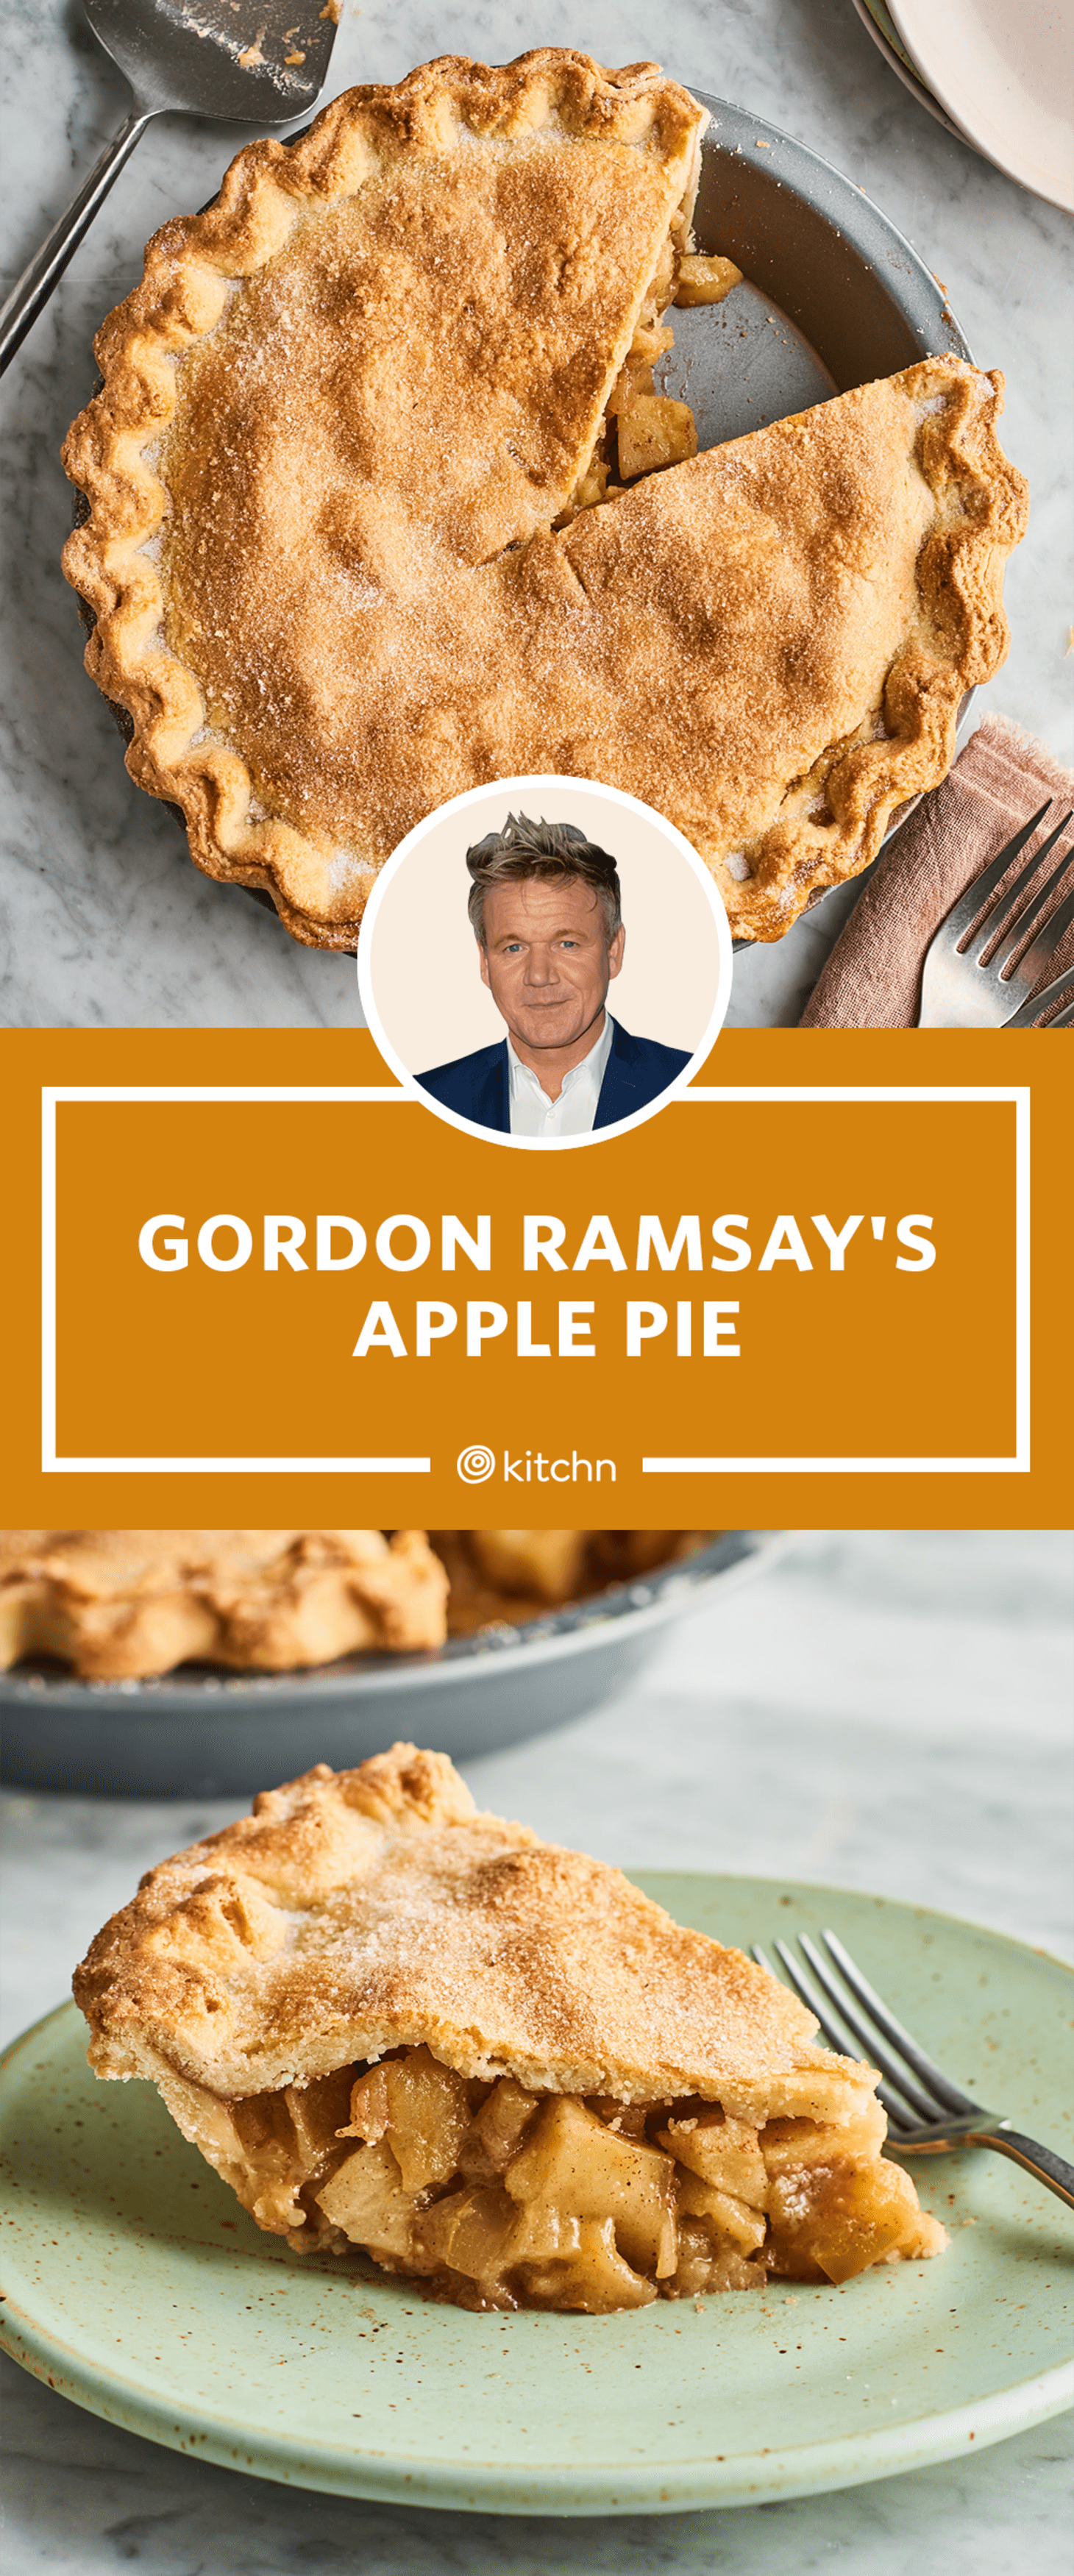 I Tried Gordon Ramsay's Apple Pie Recipe